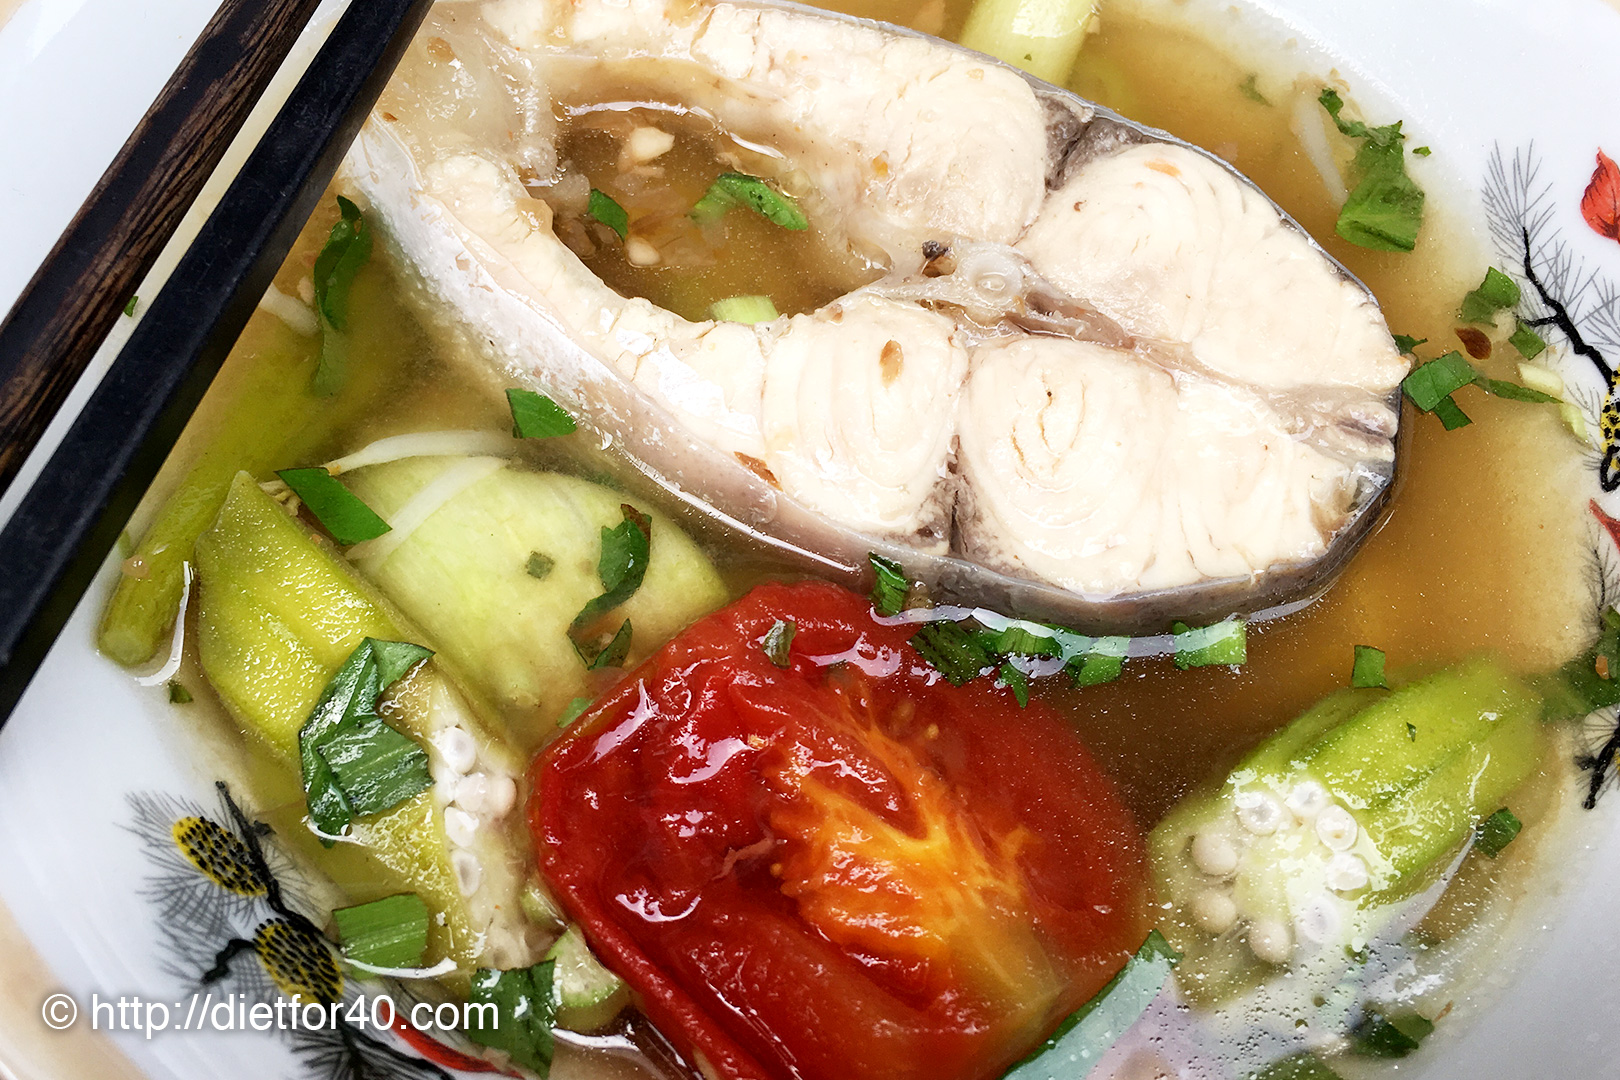 ベトナム人スタッフと食べた昼食、川魚と野菜の酸っぱいスープ